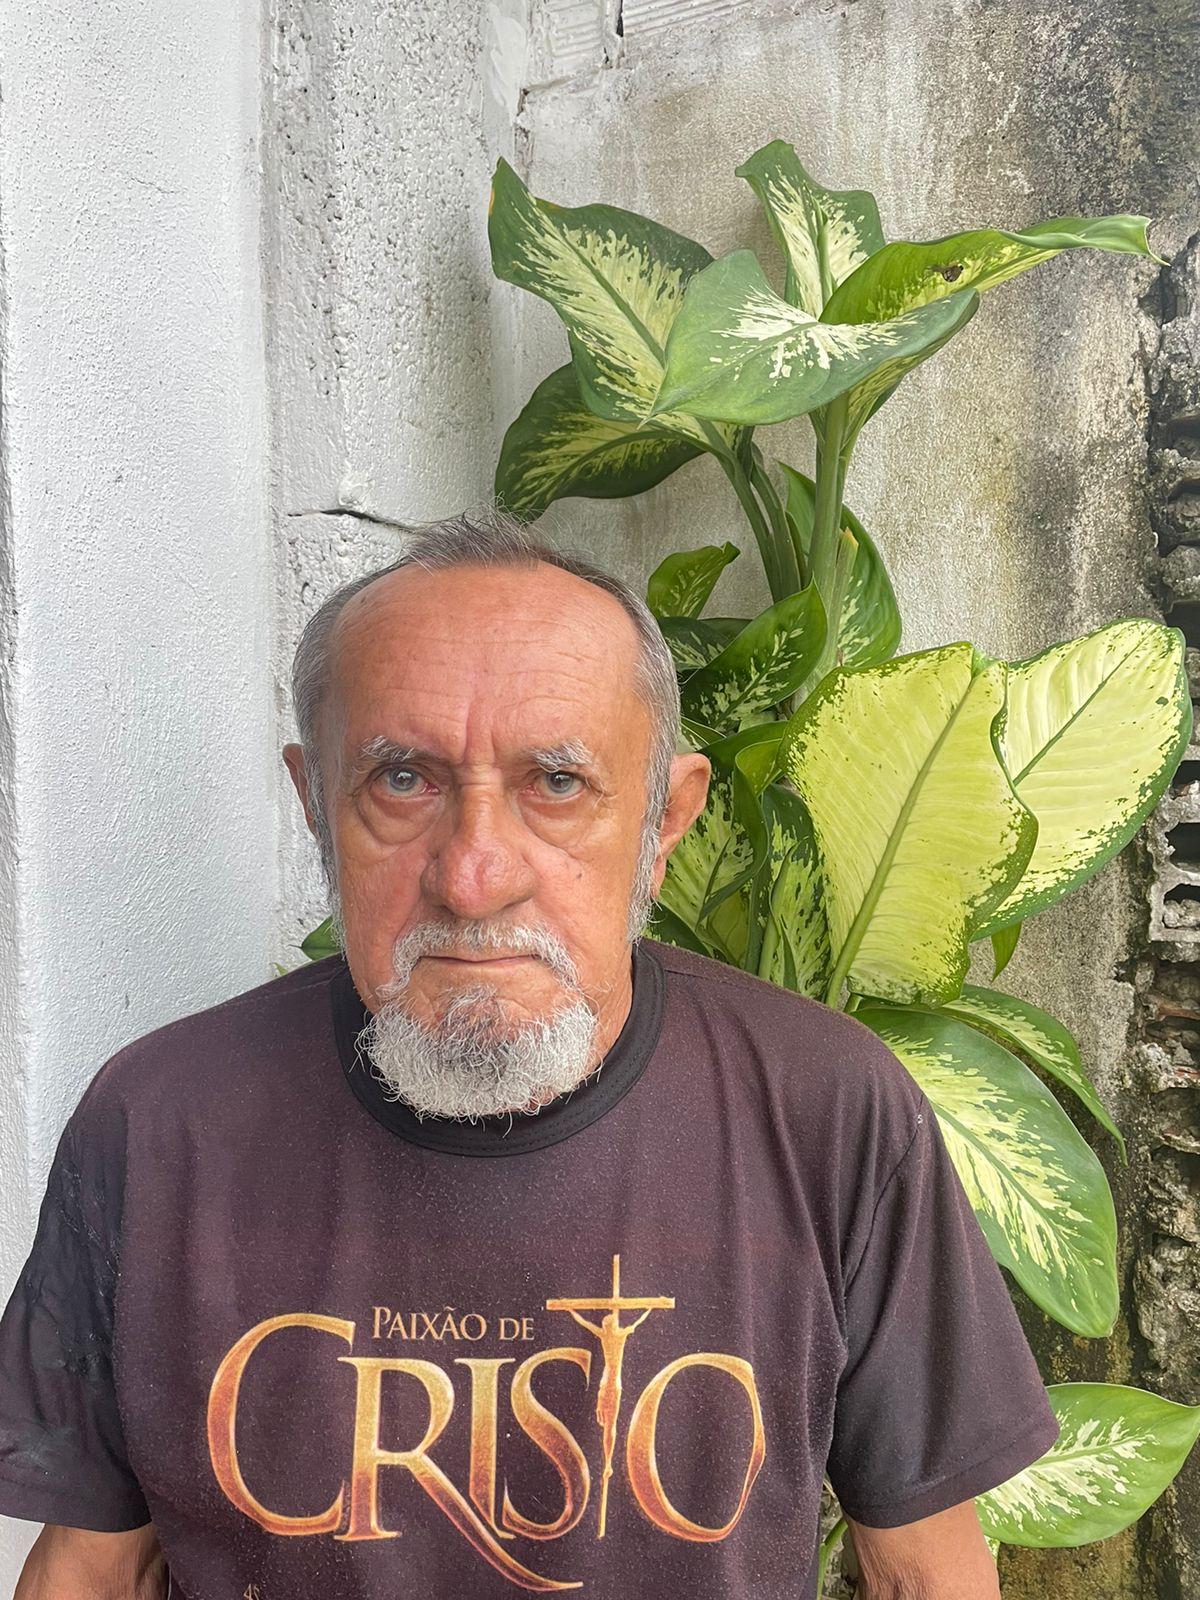 Celso Soares, 74, participa da Paixão de Cristo desde a primeira edição